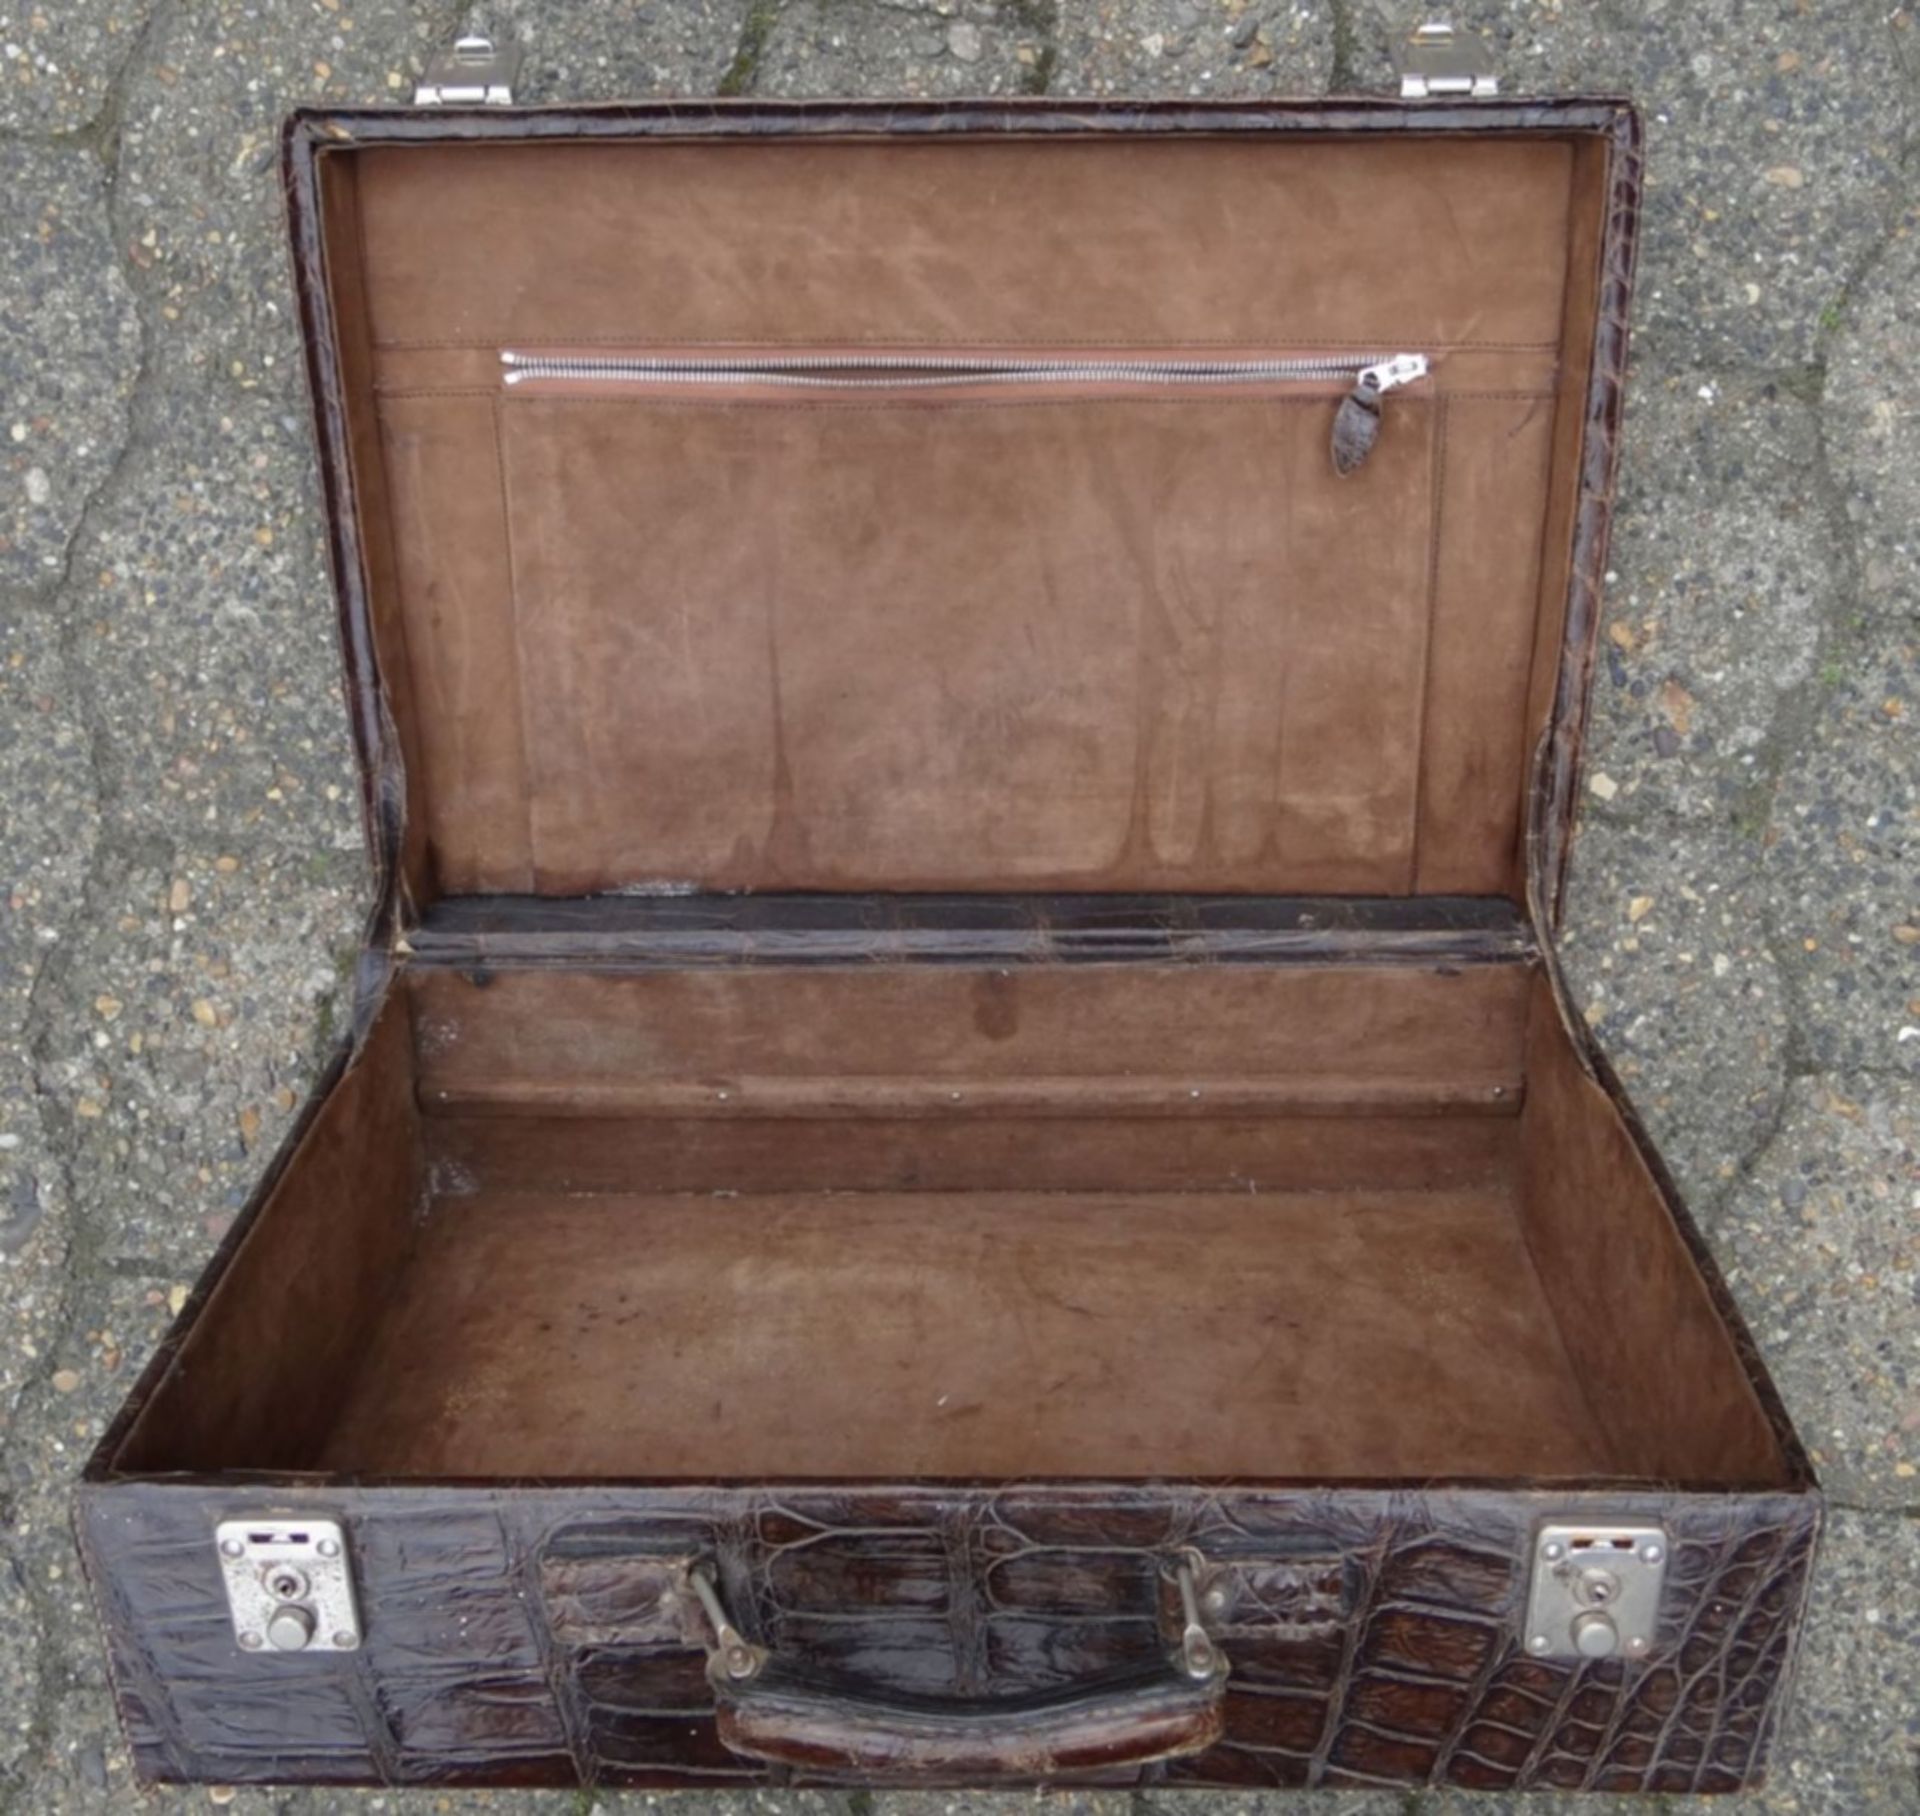 Handkoffer, Krokoleder, Alters-u. Gebrauchsspuren, H-17 cm, 34x50 cm - Bild 4 aus 6